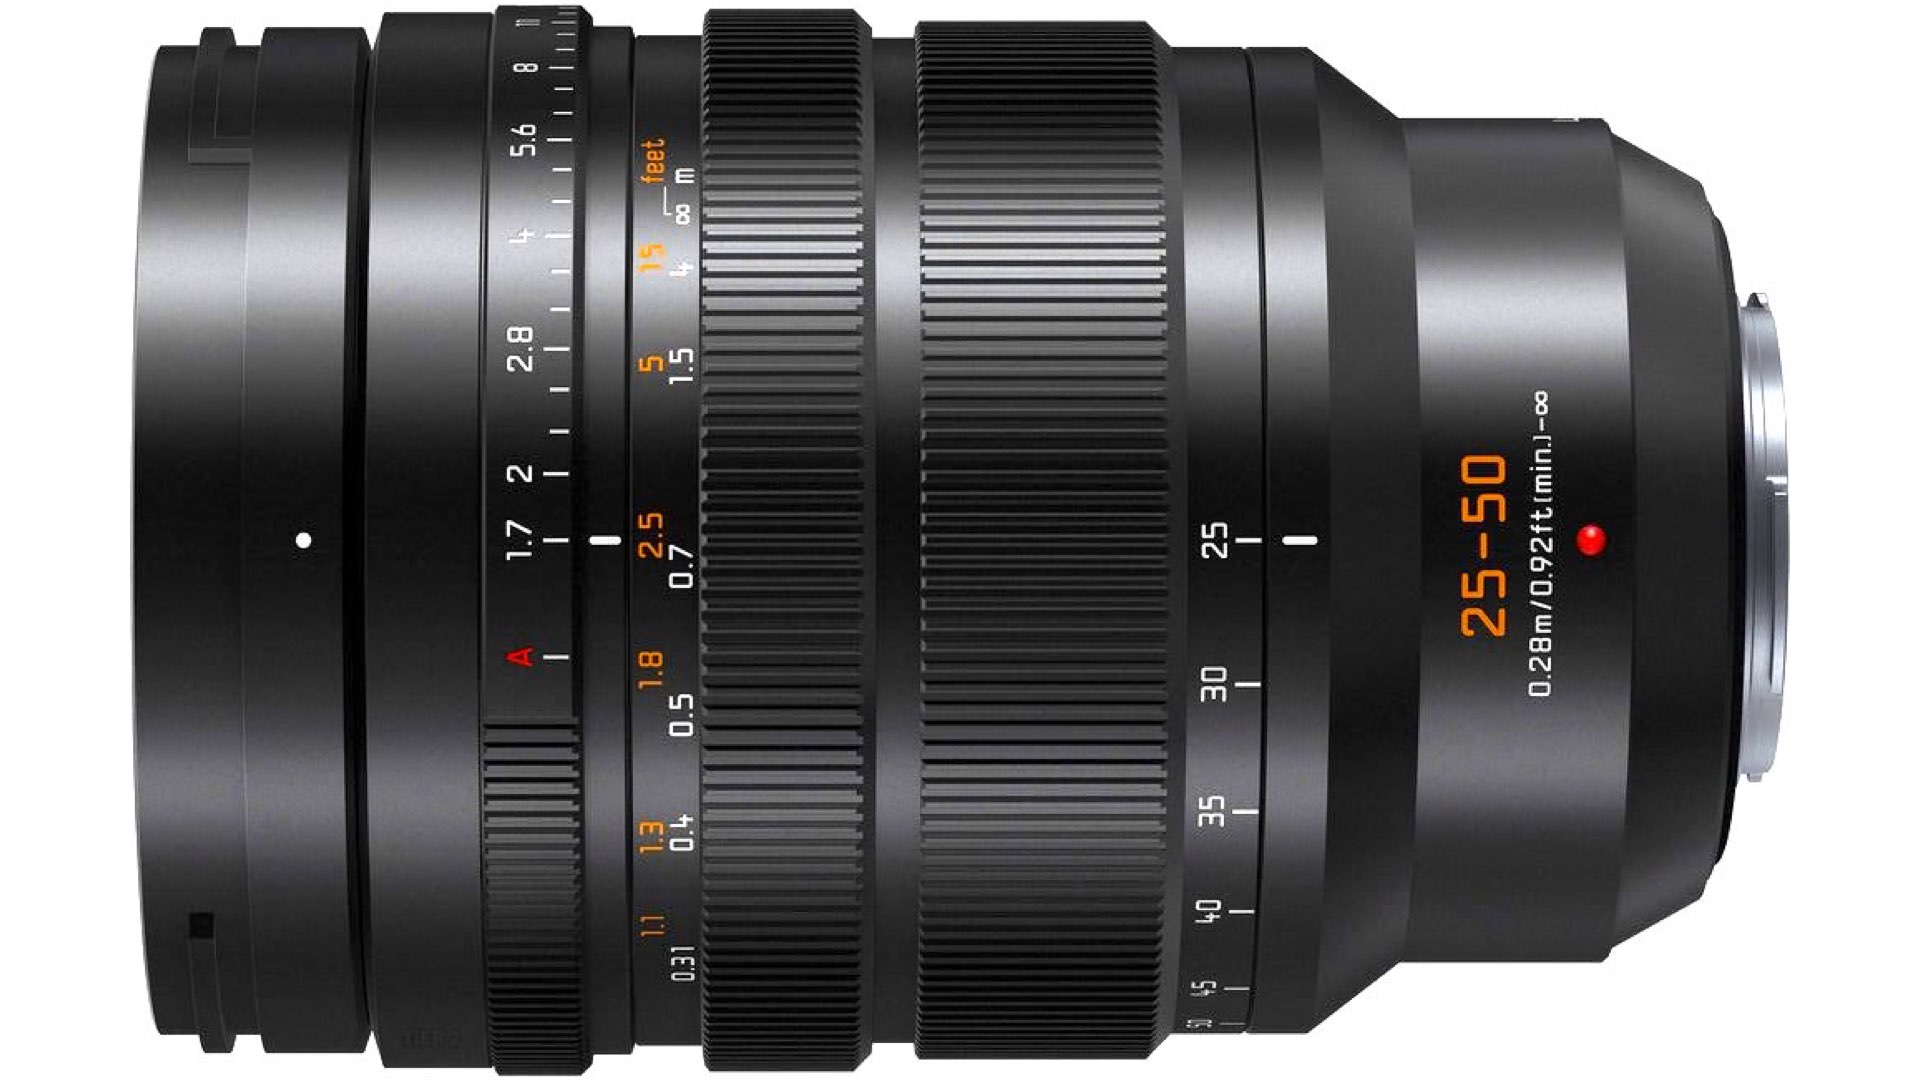 Panasonic Announces the Leica DG Vario-Summilux 25-50mm f/1.7 ASPH Lens